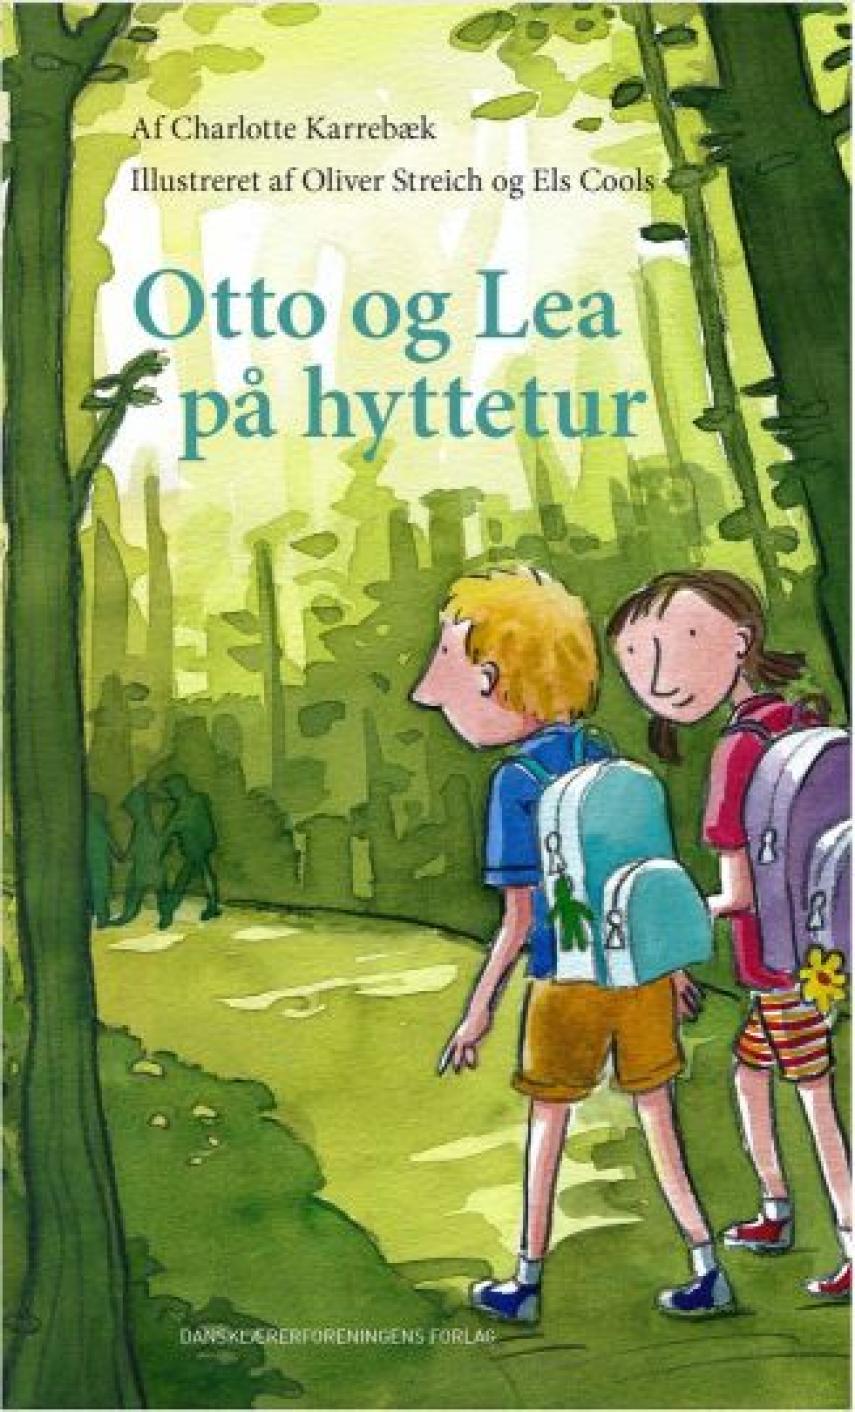 Charlotte Karrebæk: Otto og Lea på hyttetur